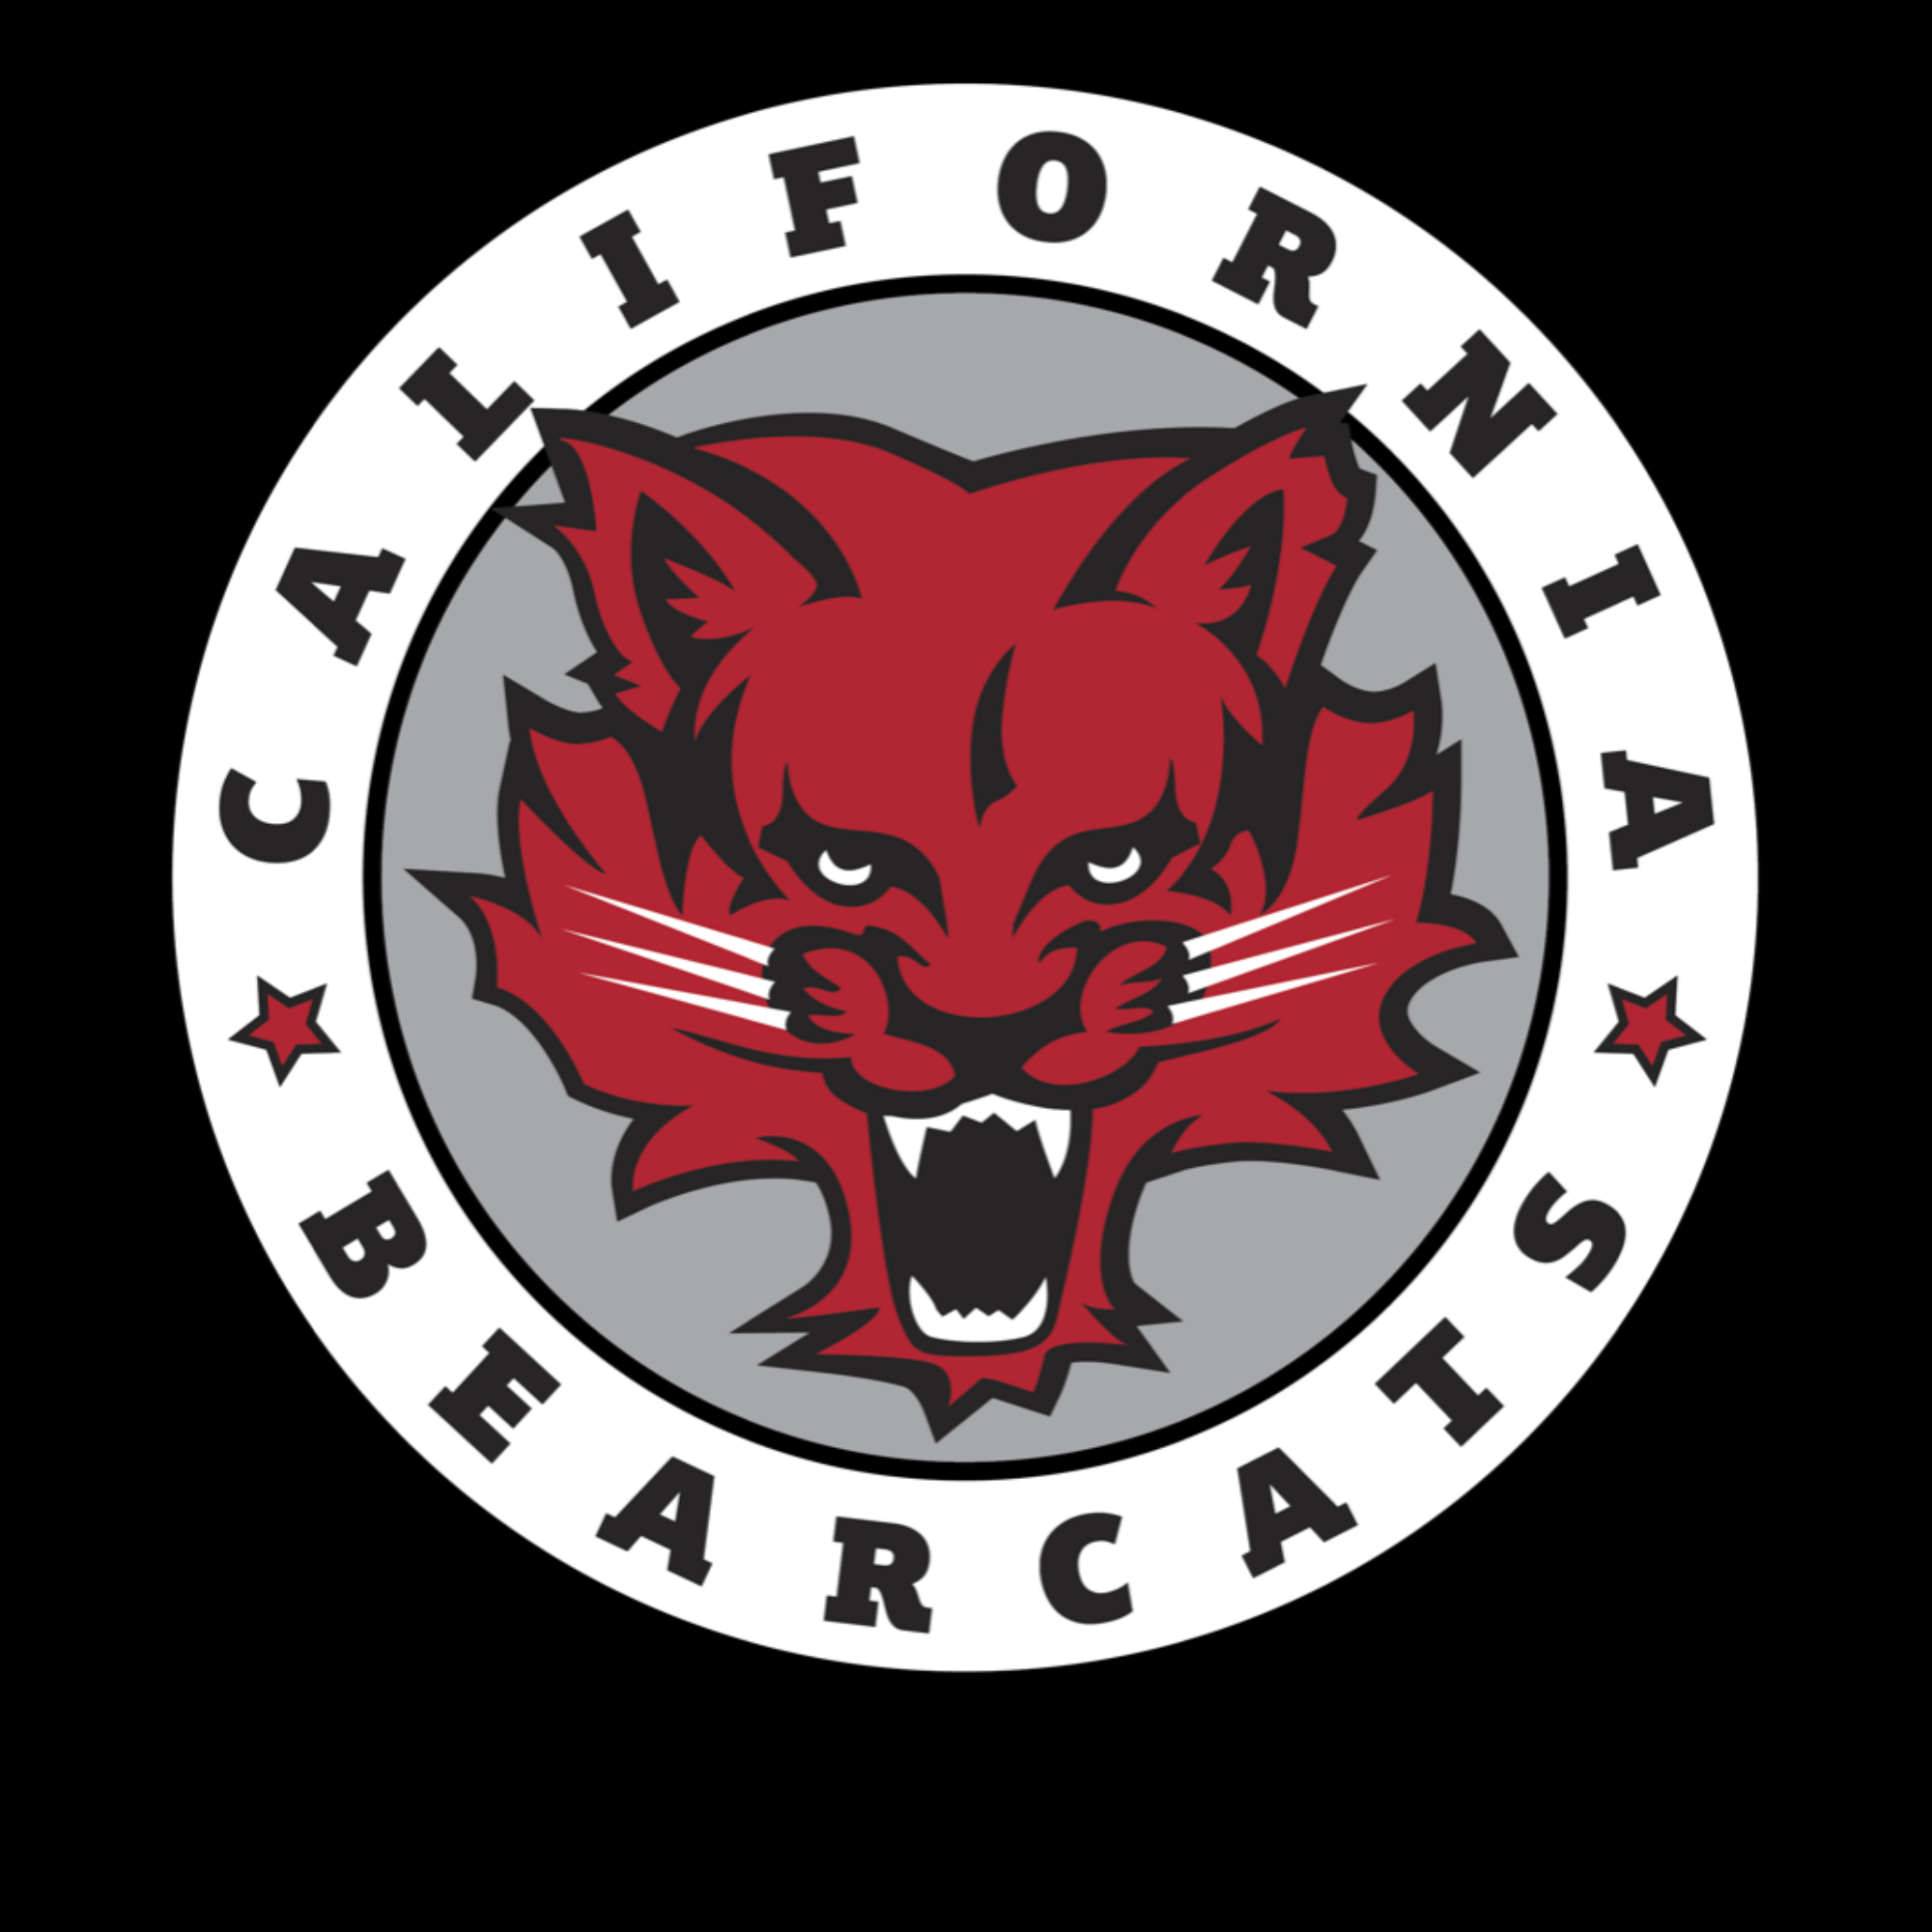 The official logo of California Bearcats